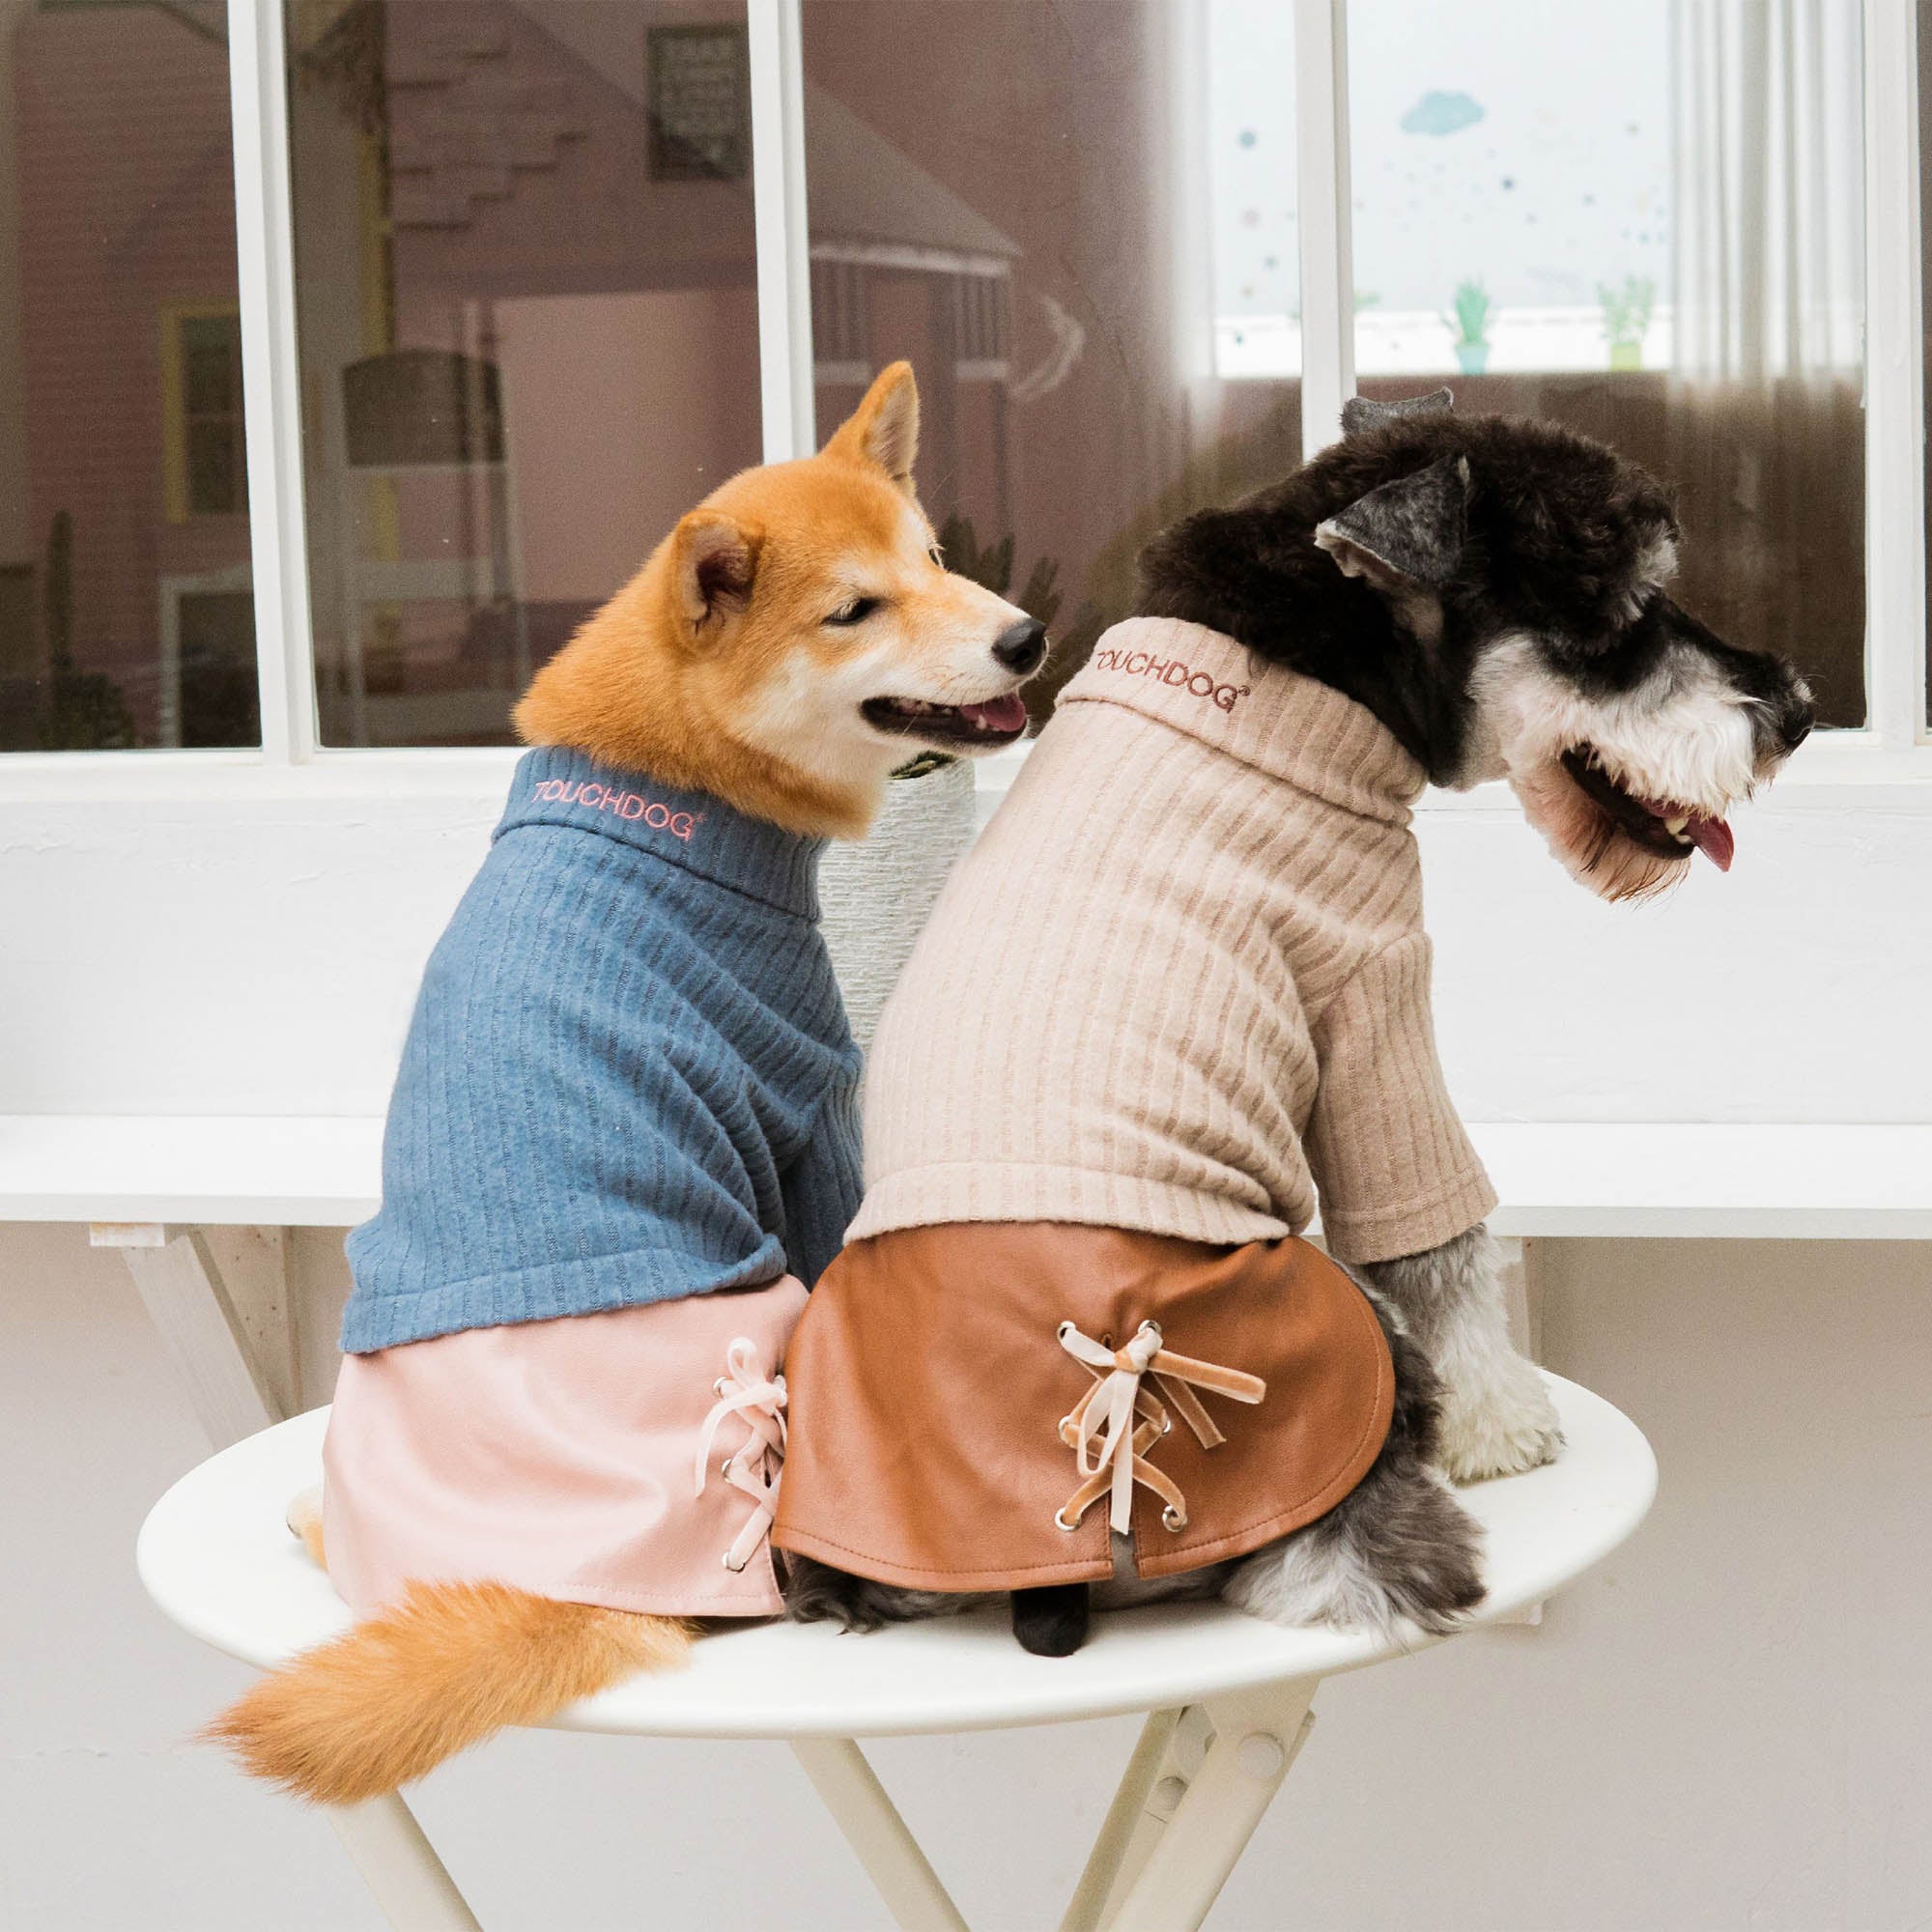 Touchdog® Modress Dog Sweater & Dress - Brown - Medium